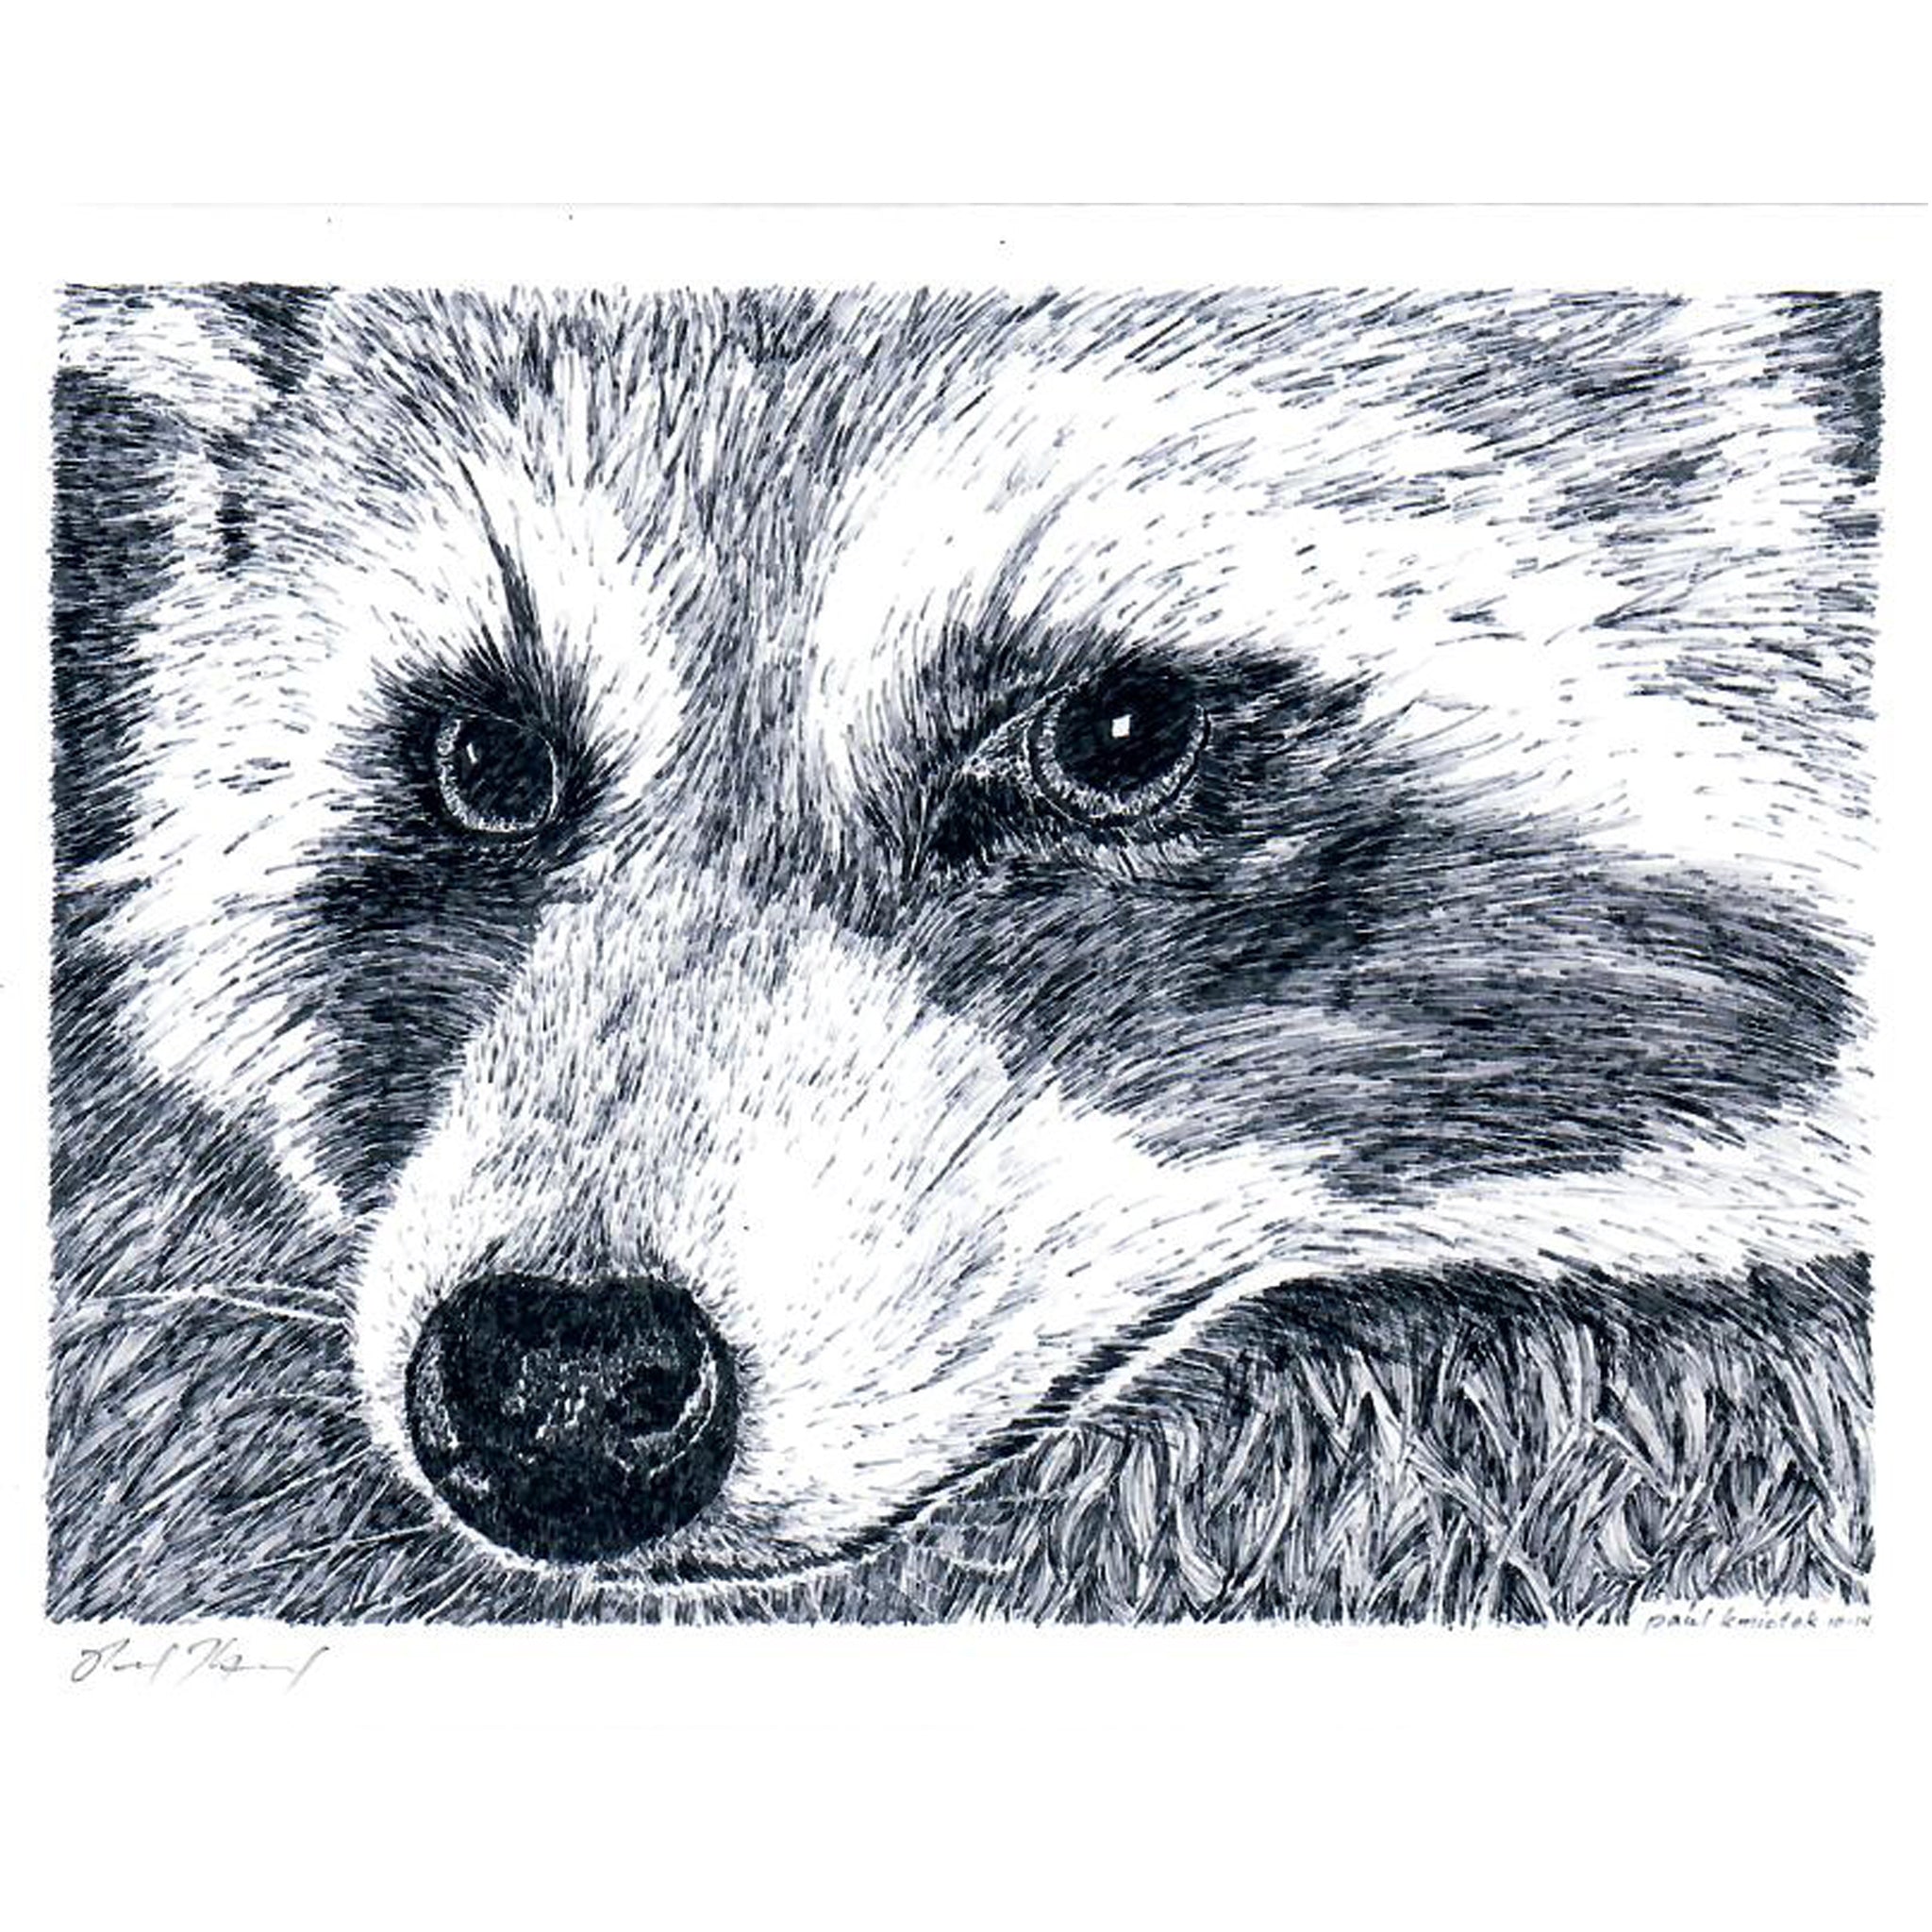 Raccoon Notecard, Pen and Ink Artwork by Paul Kmiotek